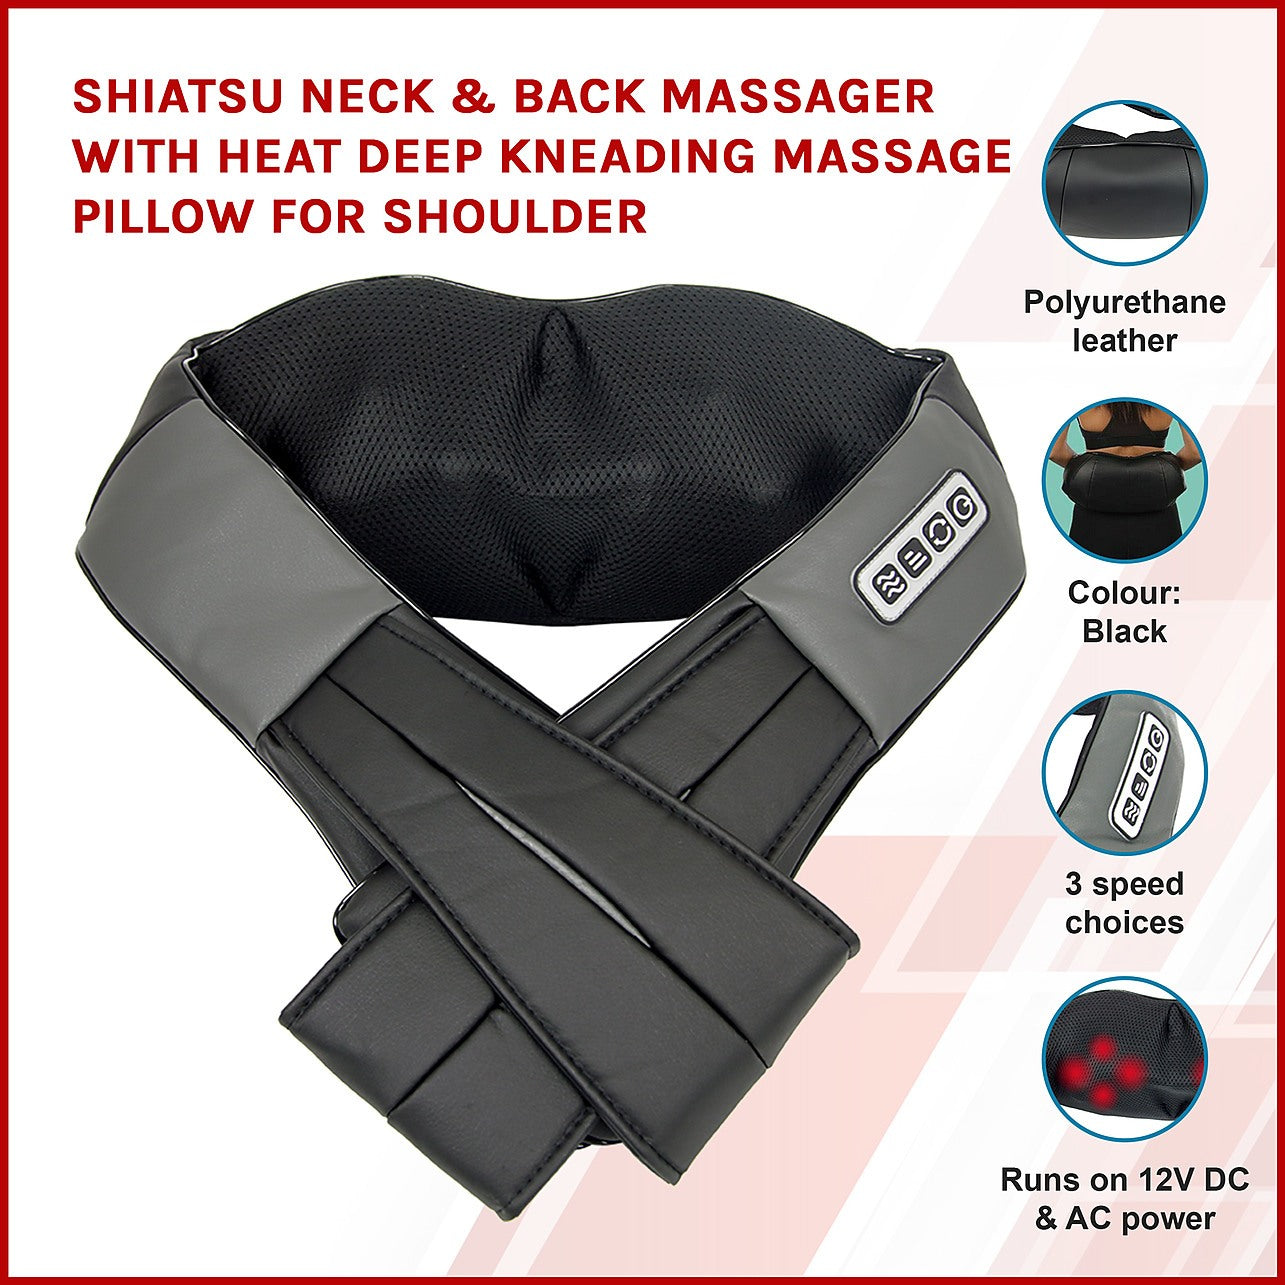 Shiatsu Neck & Back Massager with Heat Deep Kneading Massage